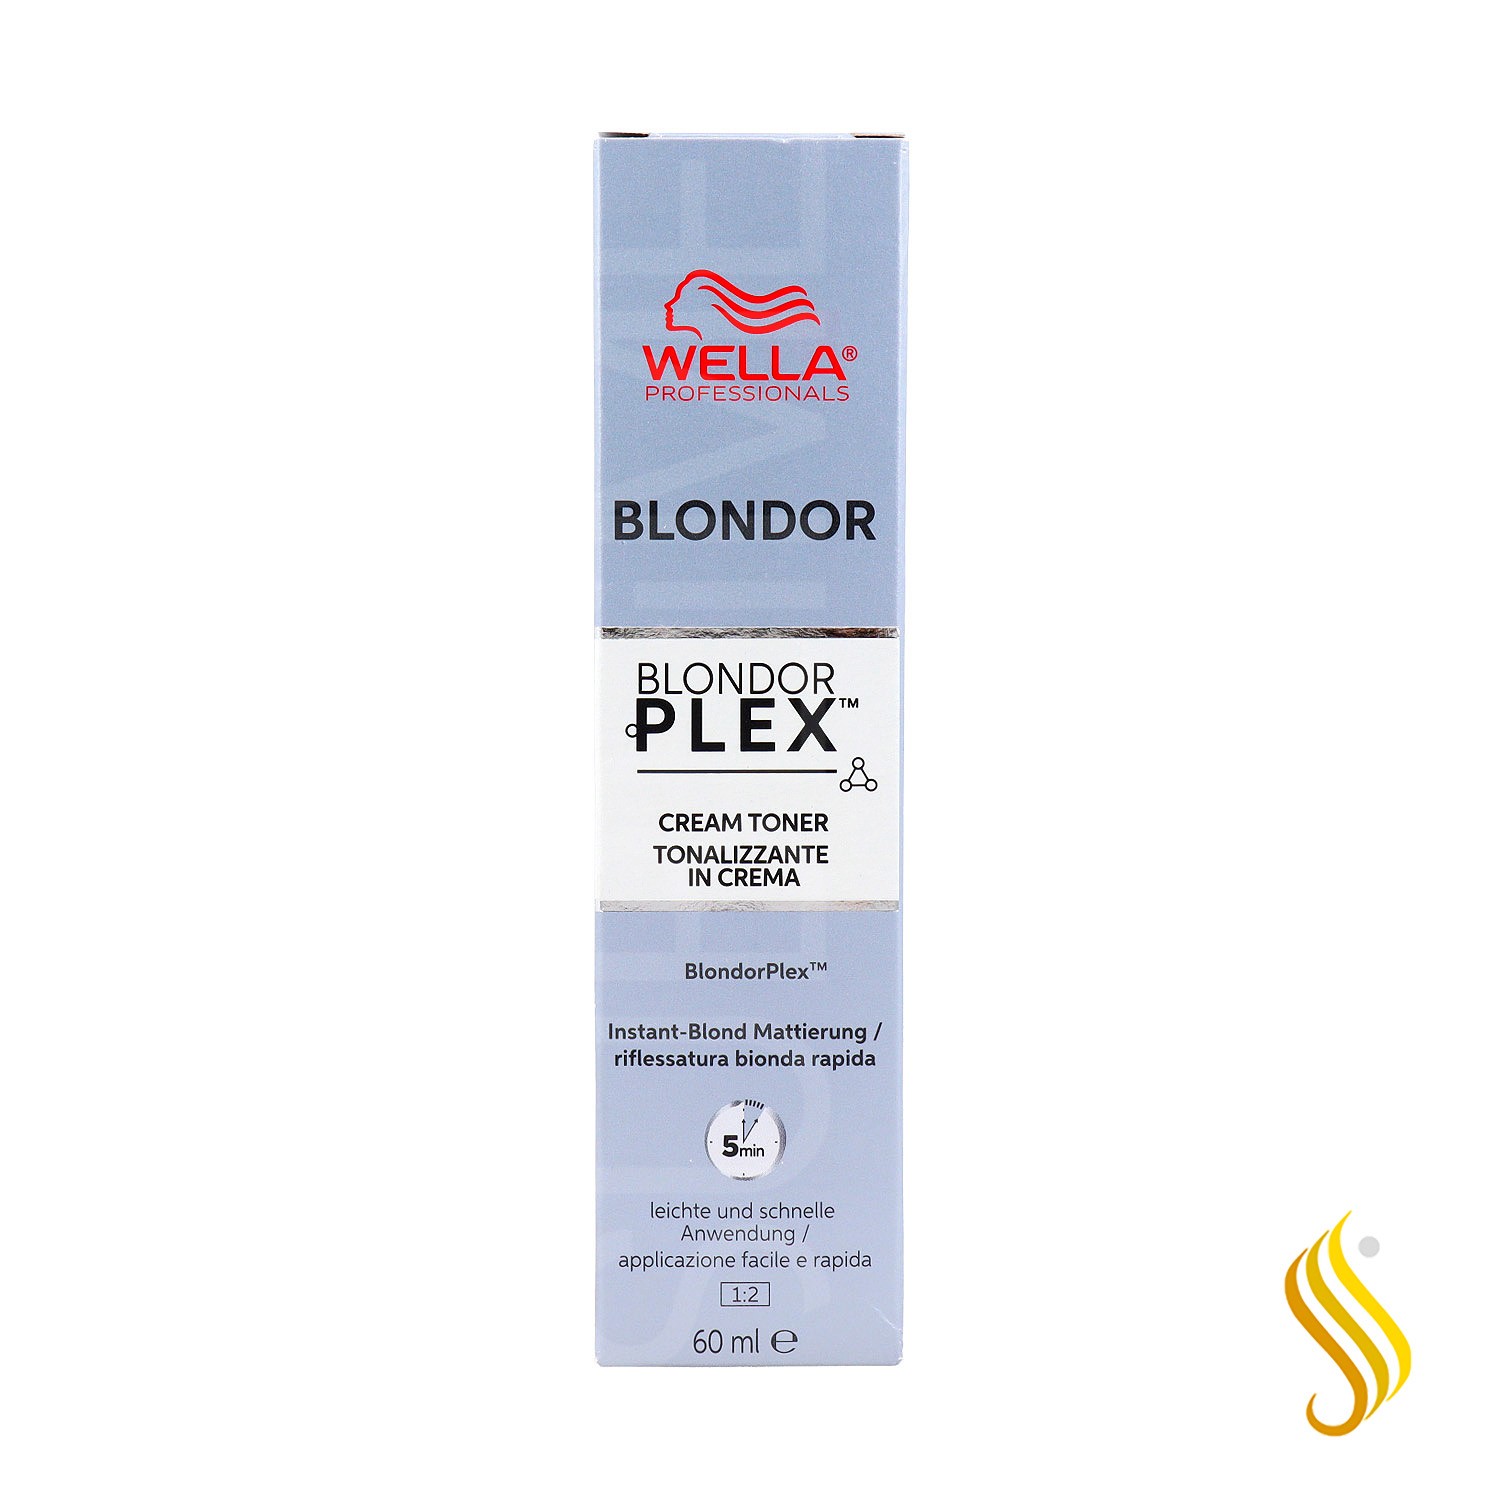 Wella Blondor Plex Crema Toner/36 60 ml